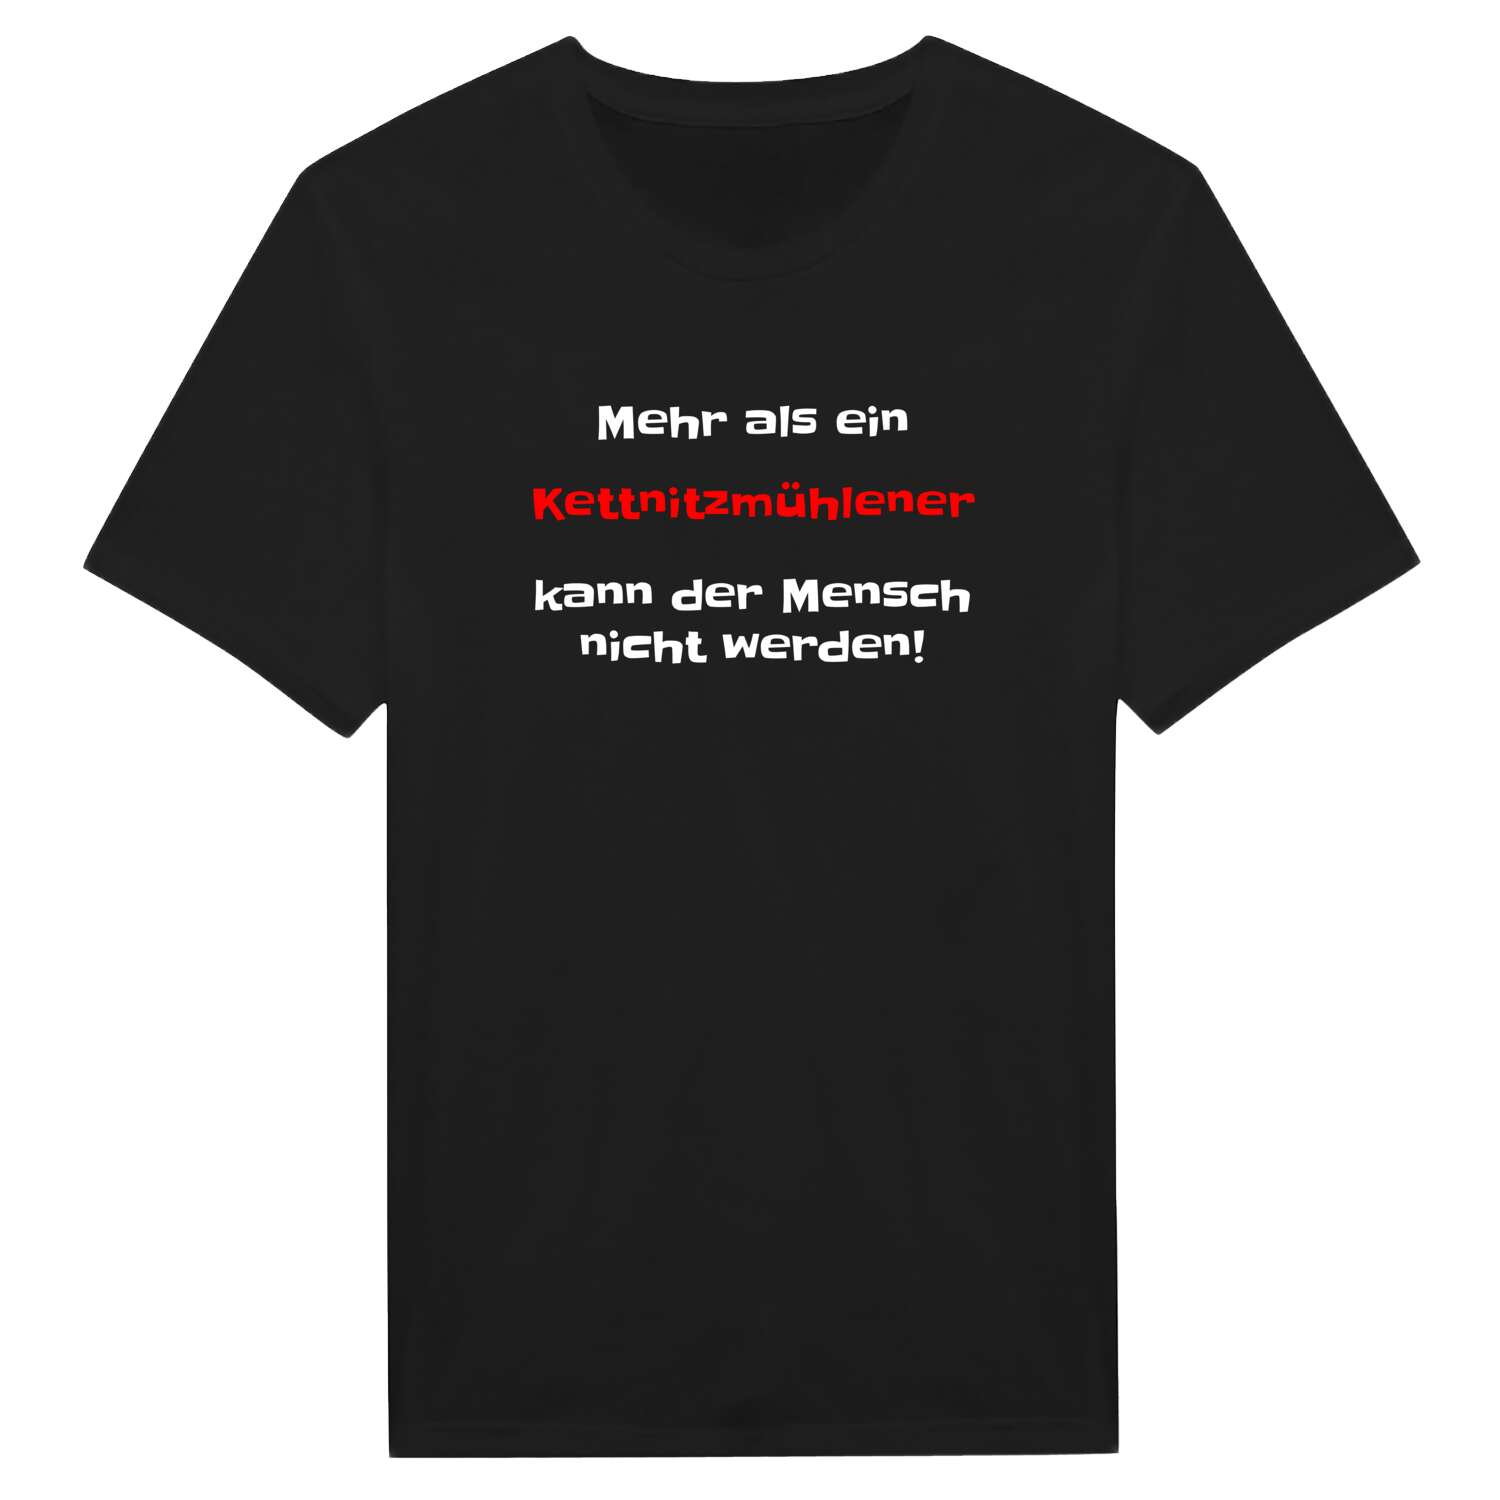 Kettnitzmühle T-Shirt »Mehr als ein«